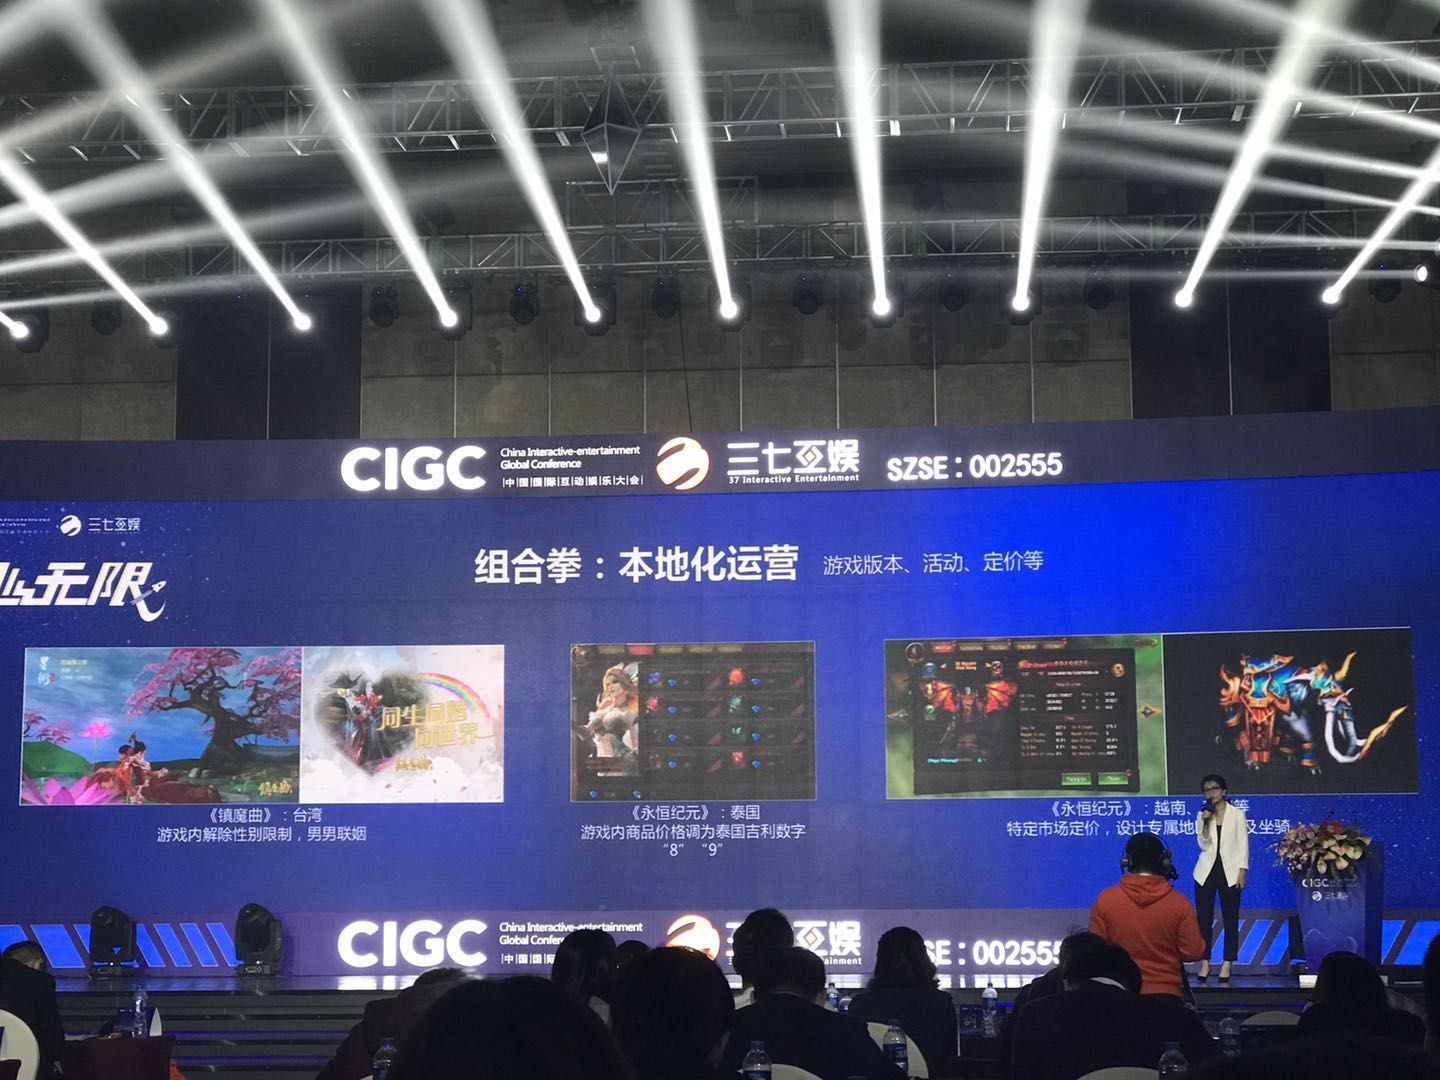 2018 年 CIGC，彭美介绍组合拳里的本地化运营